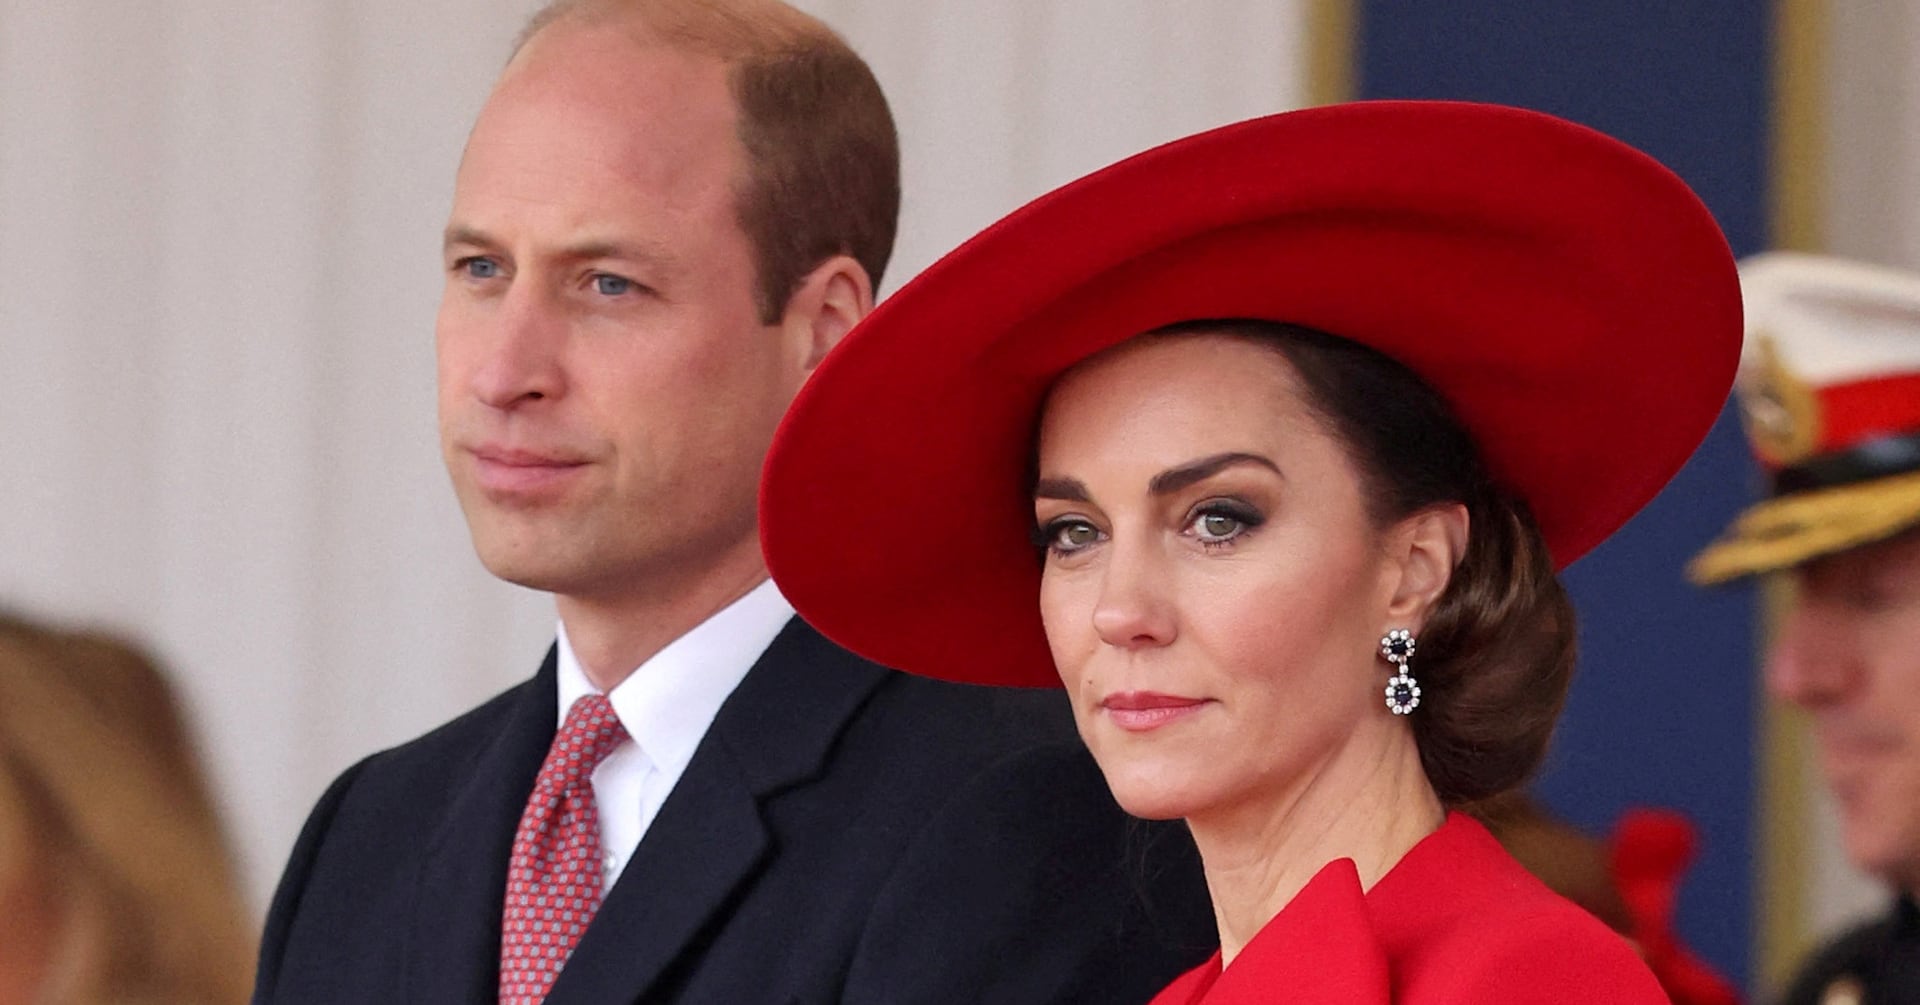 皇太子夫妻は励ましに「強く心打たれた」、妃のがん公表で英王室